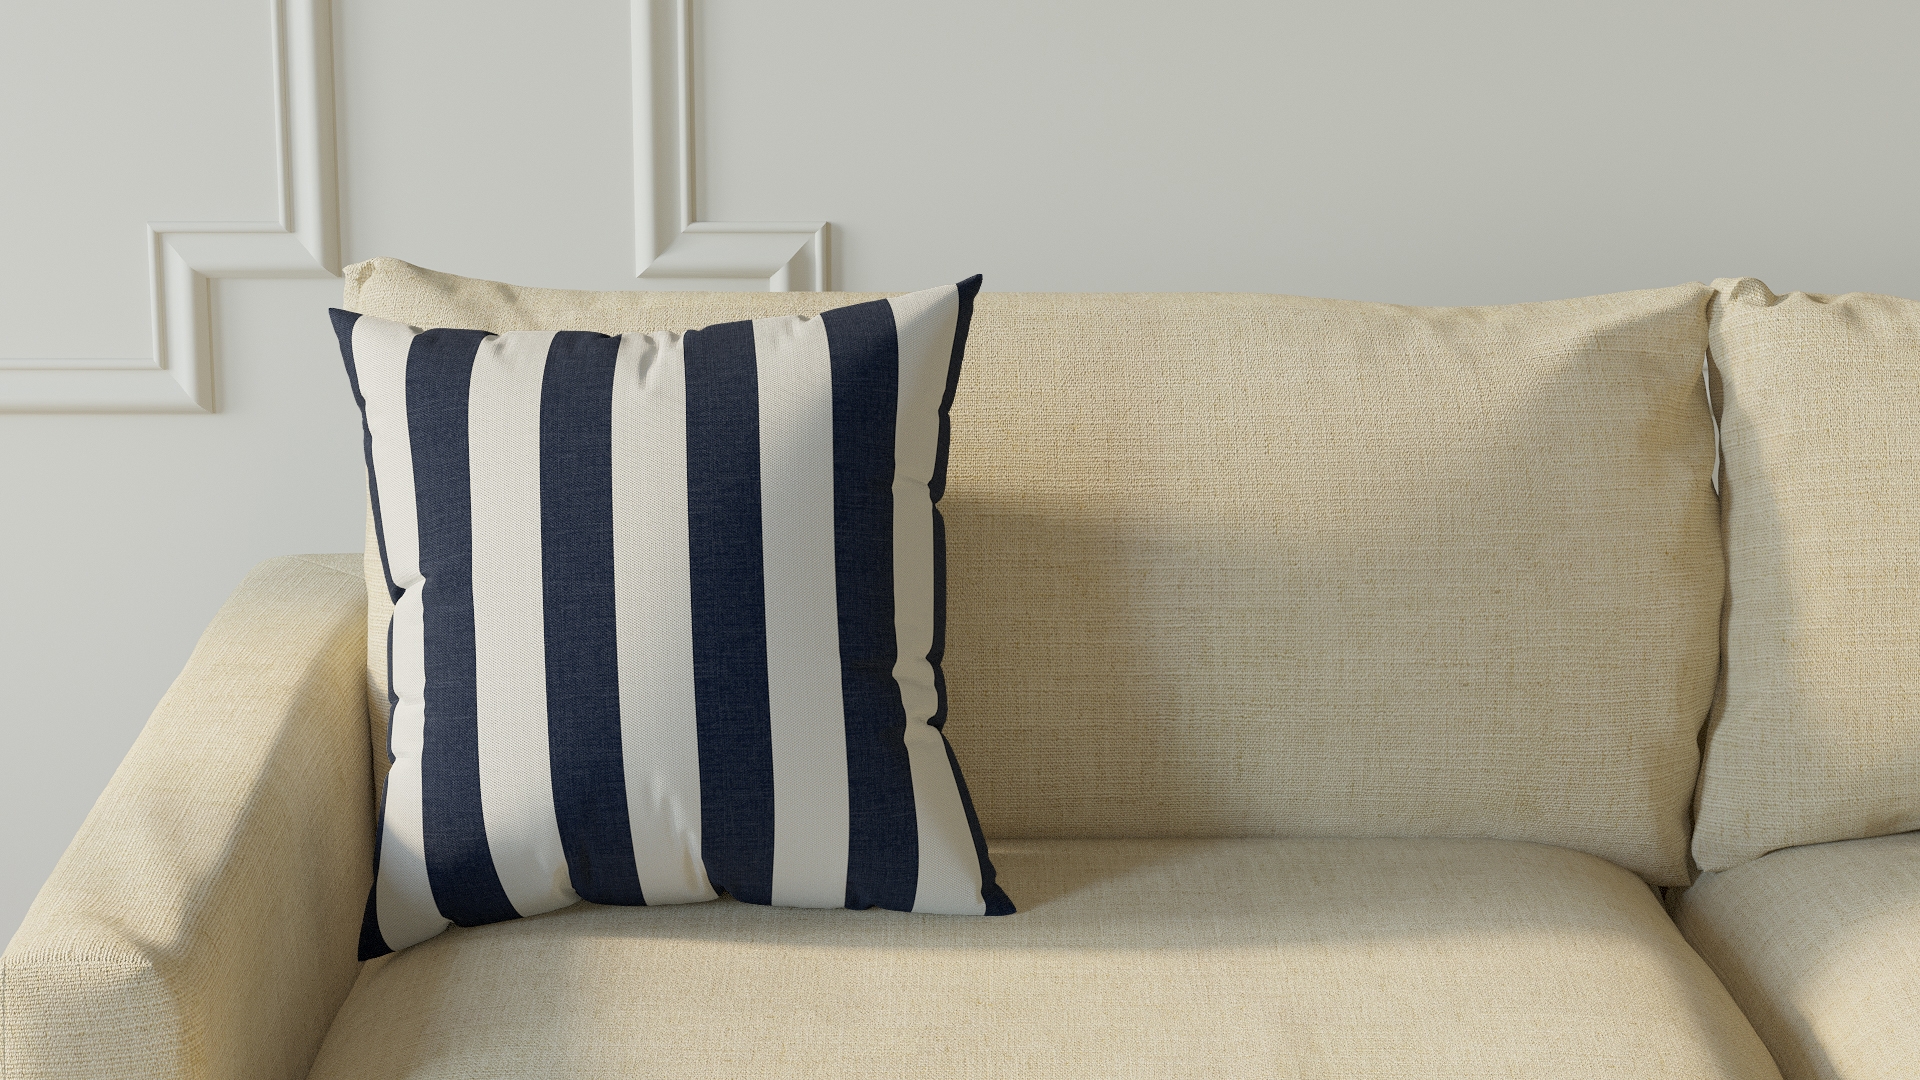 Throw Pillow 18", Navy Cabana Stripe, 18" x 18" - Image 2